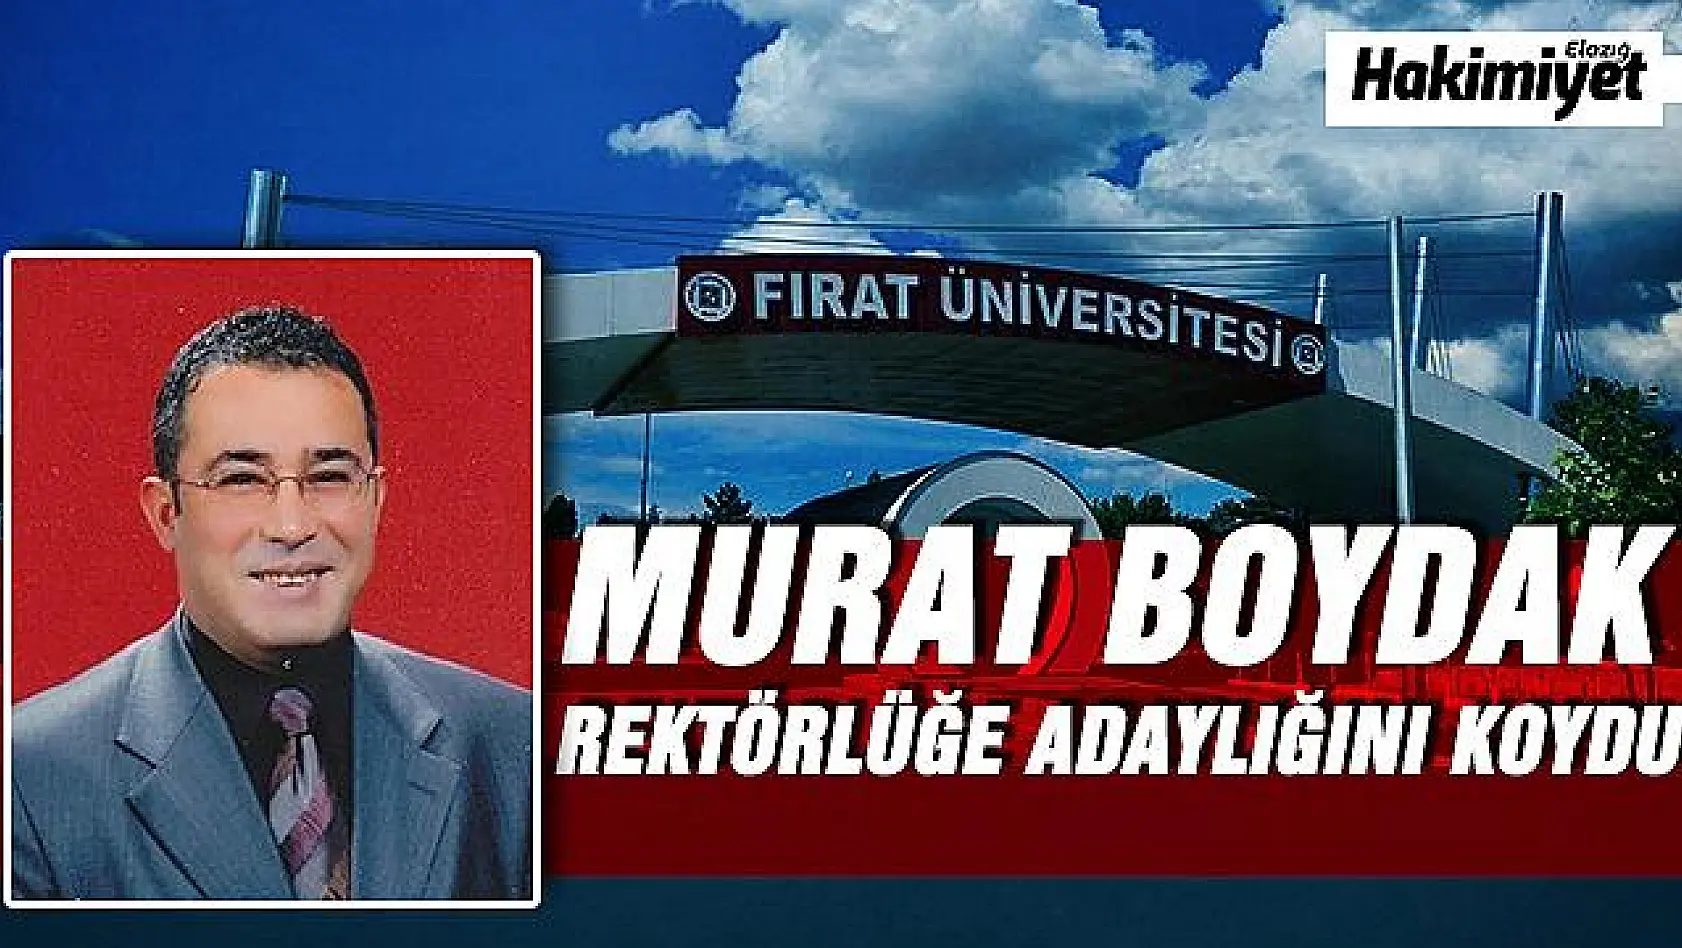 PROF. DR. MURAT BOYDAK, FIRAT ÜNİVERSİTESİ REKTÖRLÜĞÜNE ADAY